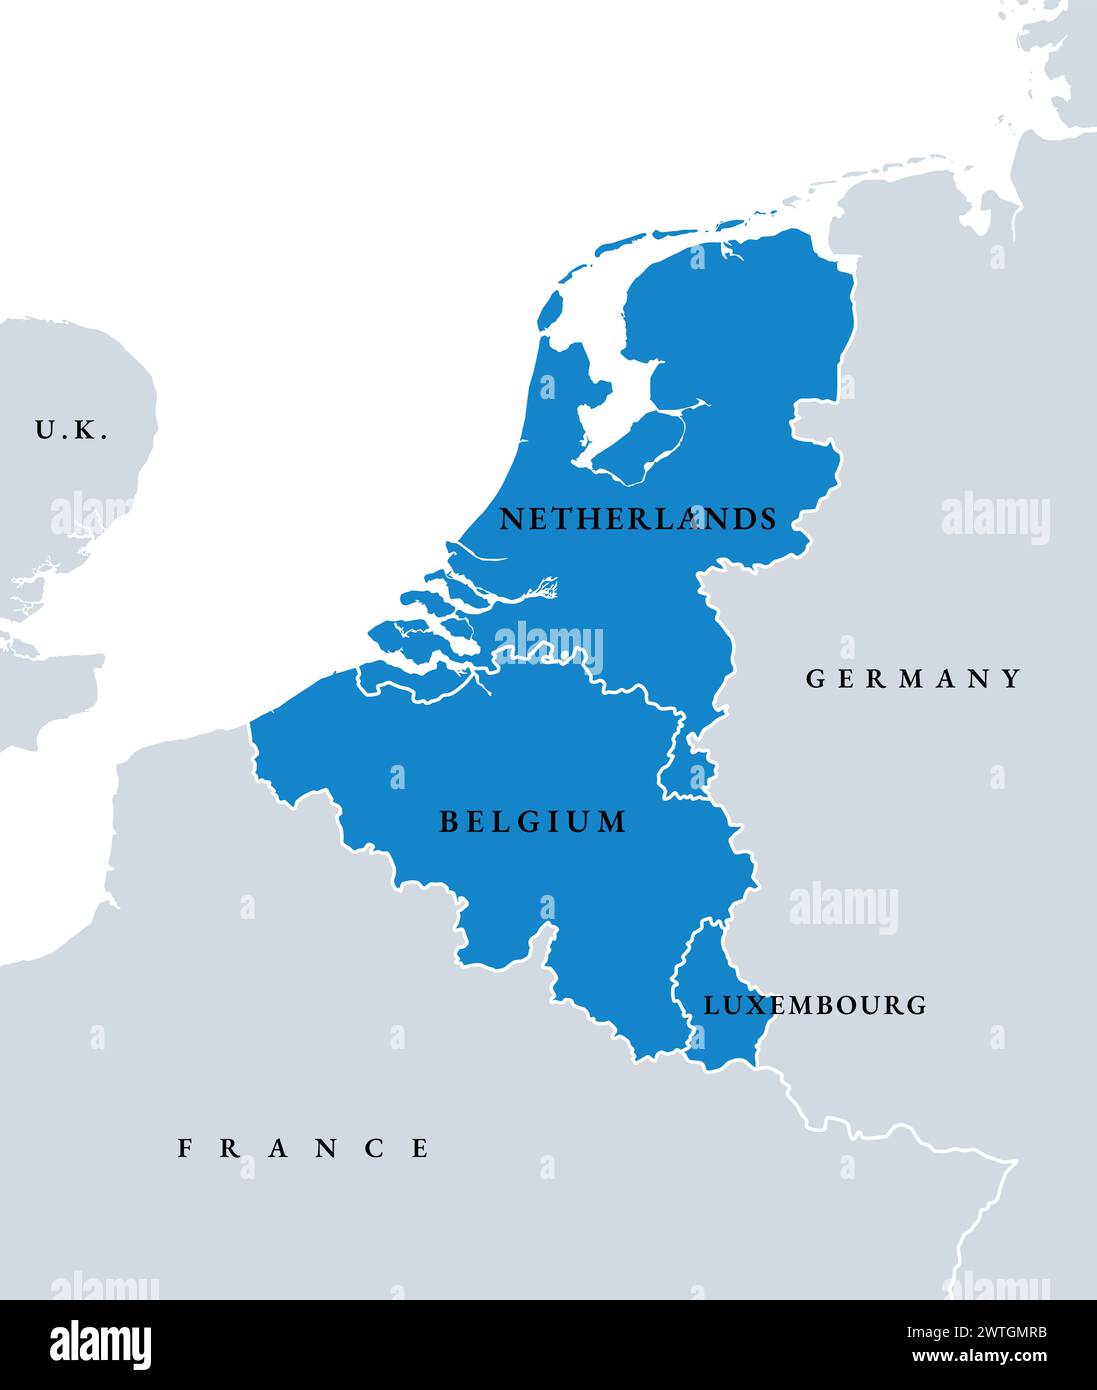 Benelux-Länder, politische Landkarte. Zusammenarbeit der europäischen staaten Belgien, Niederlande und Luxemburg. Stockfoto